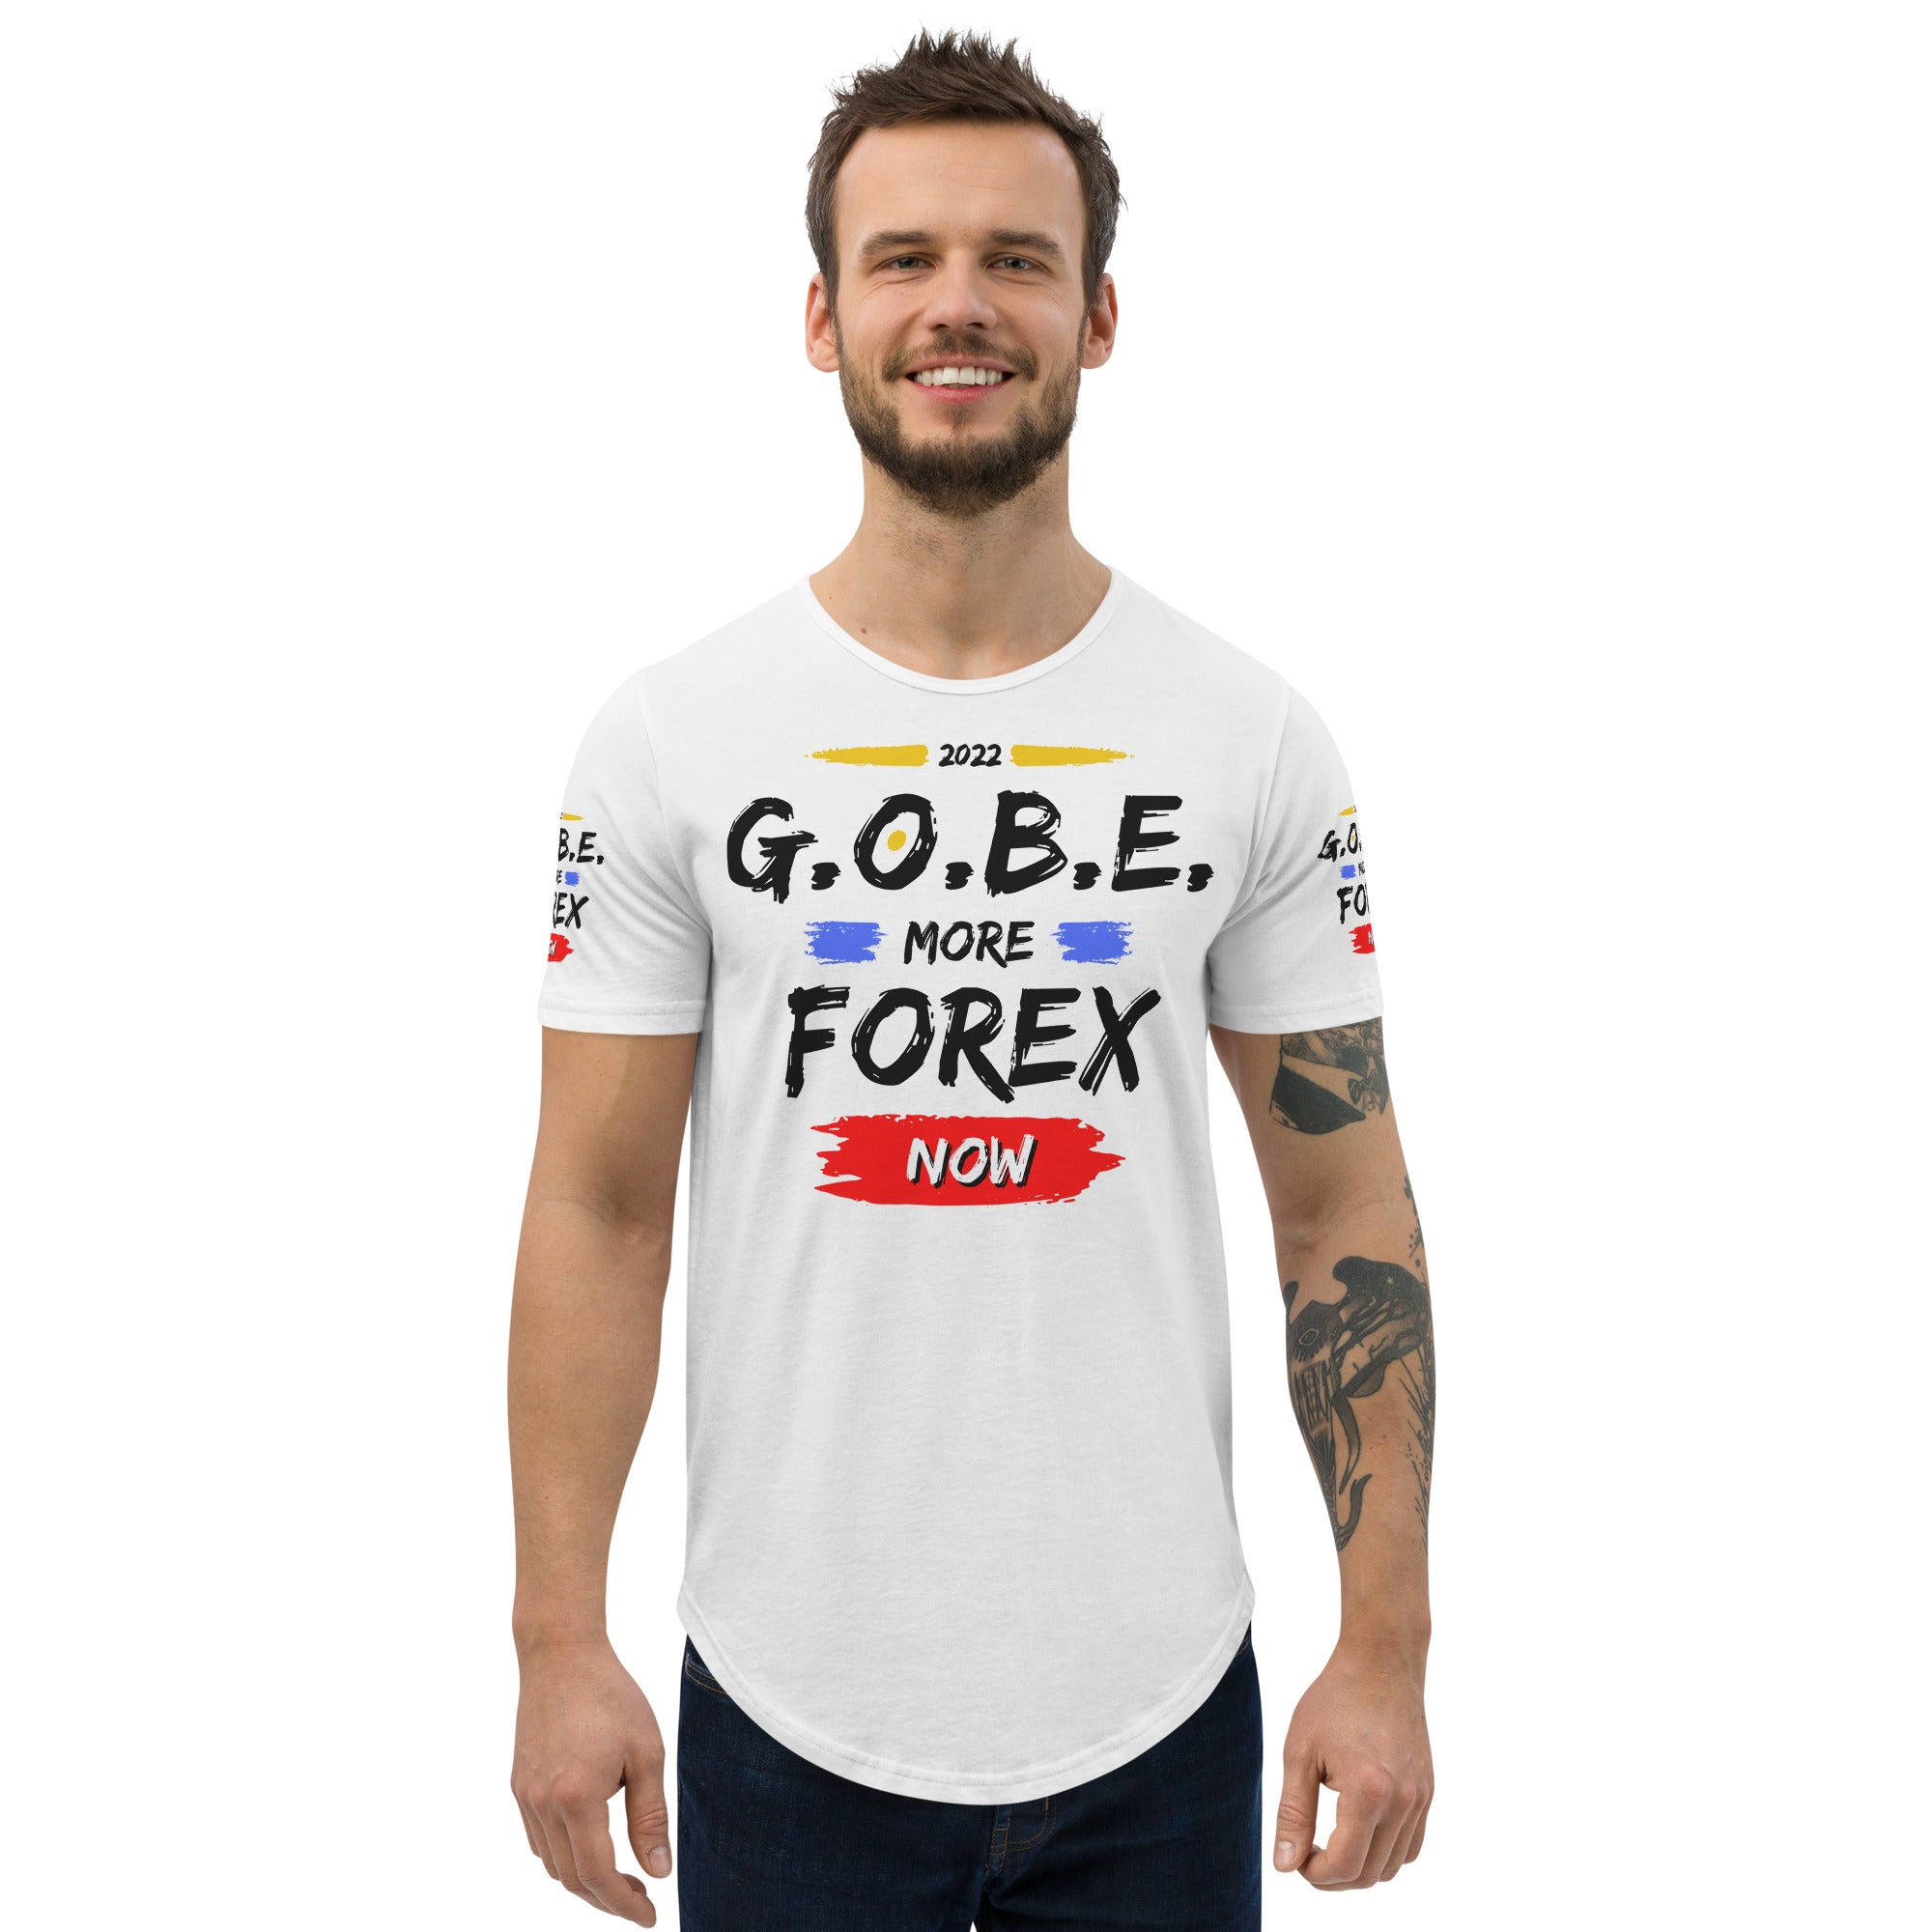 GOBE & FOREX